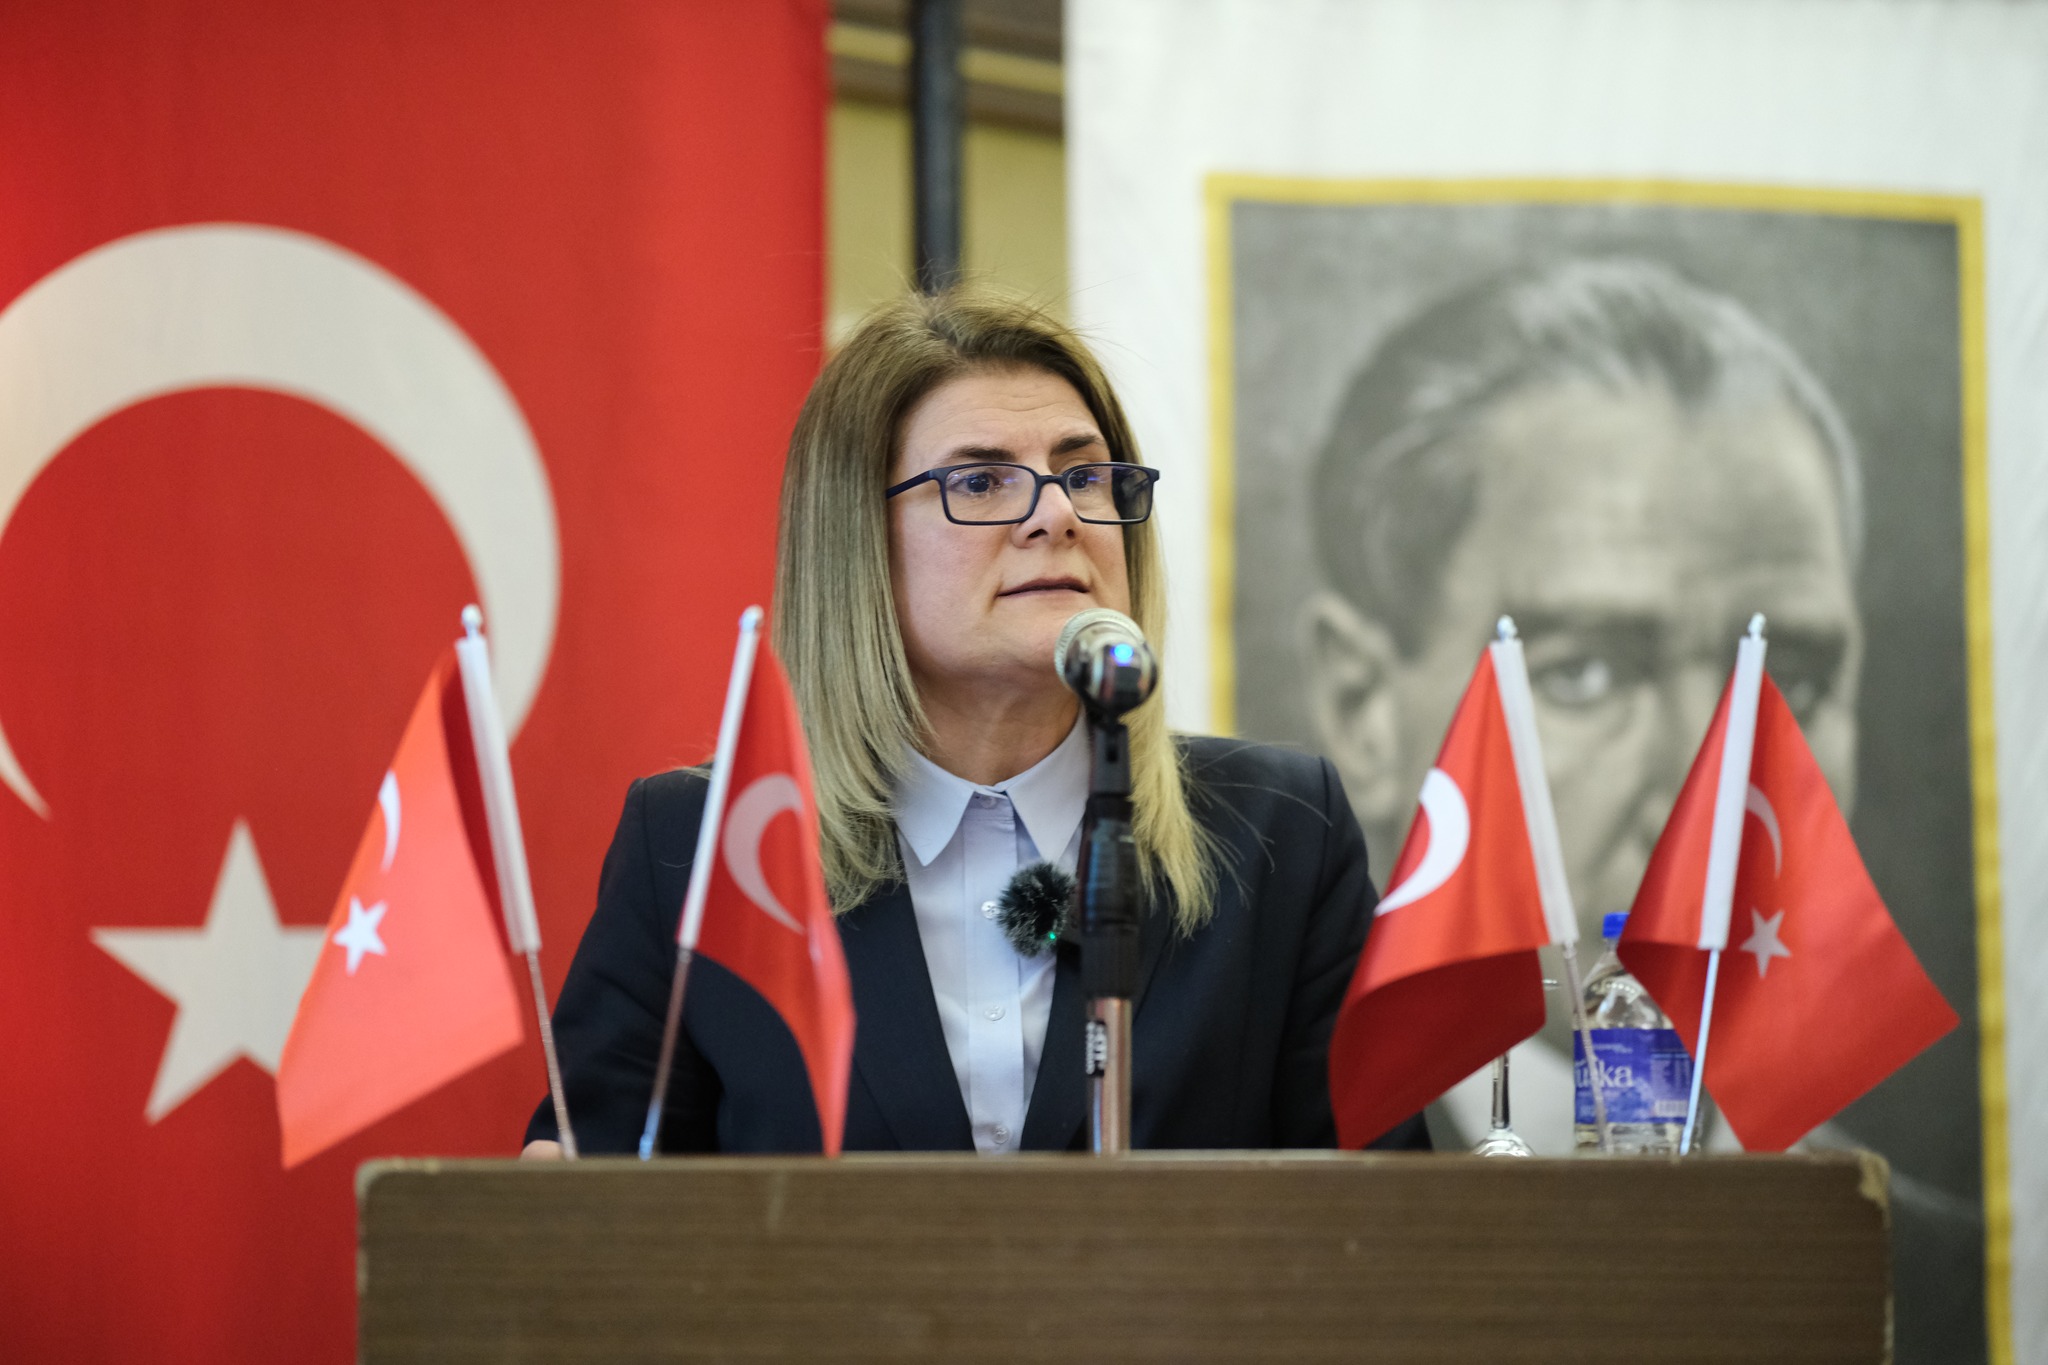 Eski İYİ Parti İl Başkanı Özlem Ural, partinin Balıkesir'deki seçim stratejisini eleştirdi ve istifa ettiğini açıkladı.